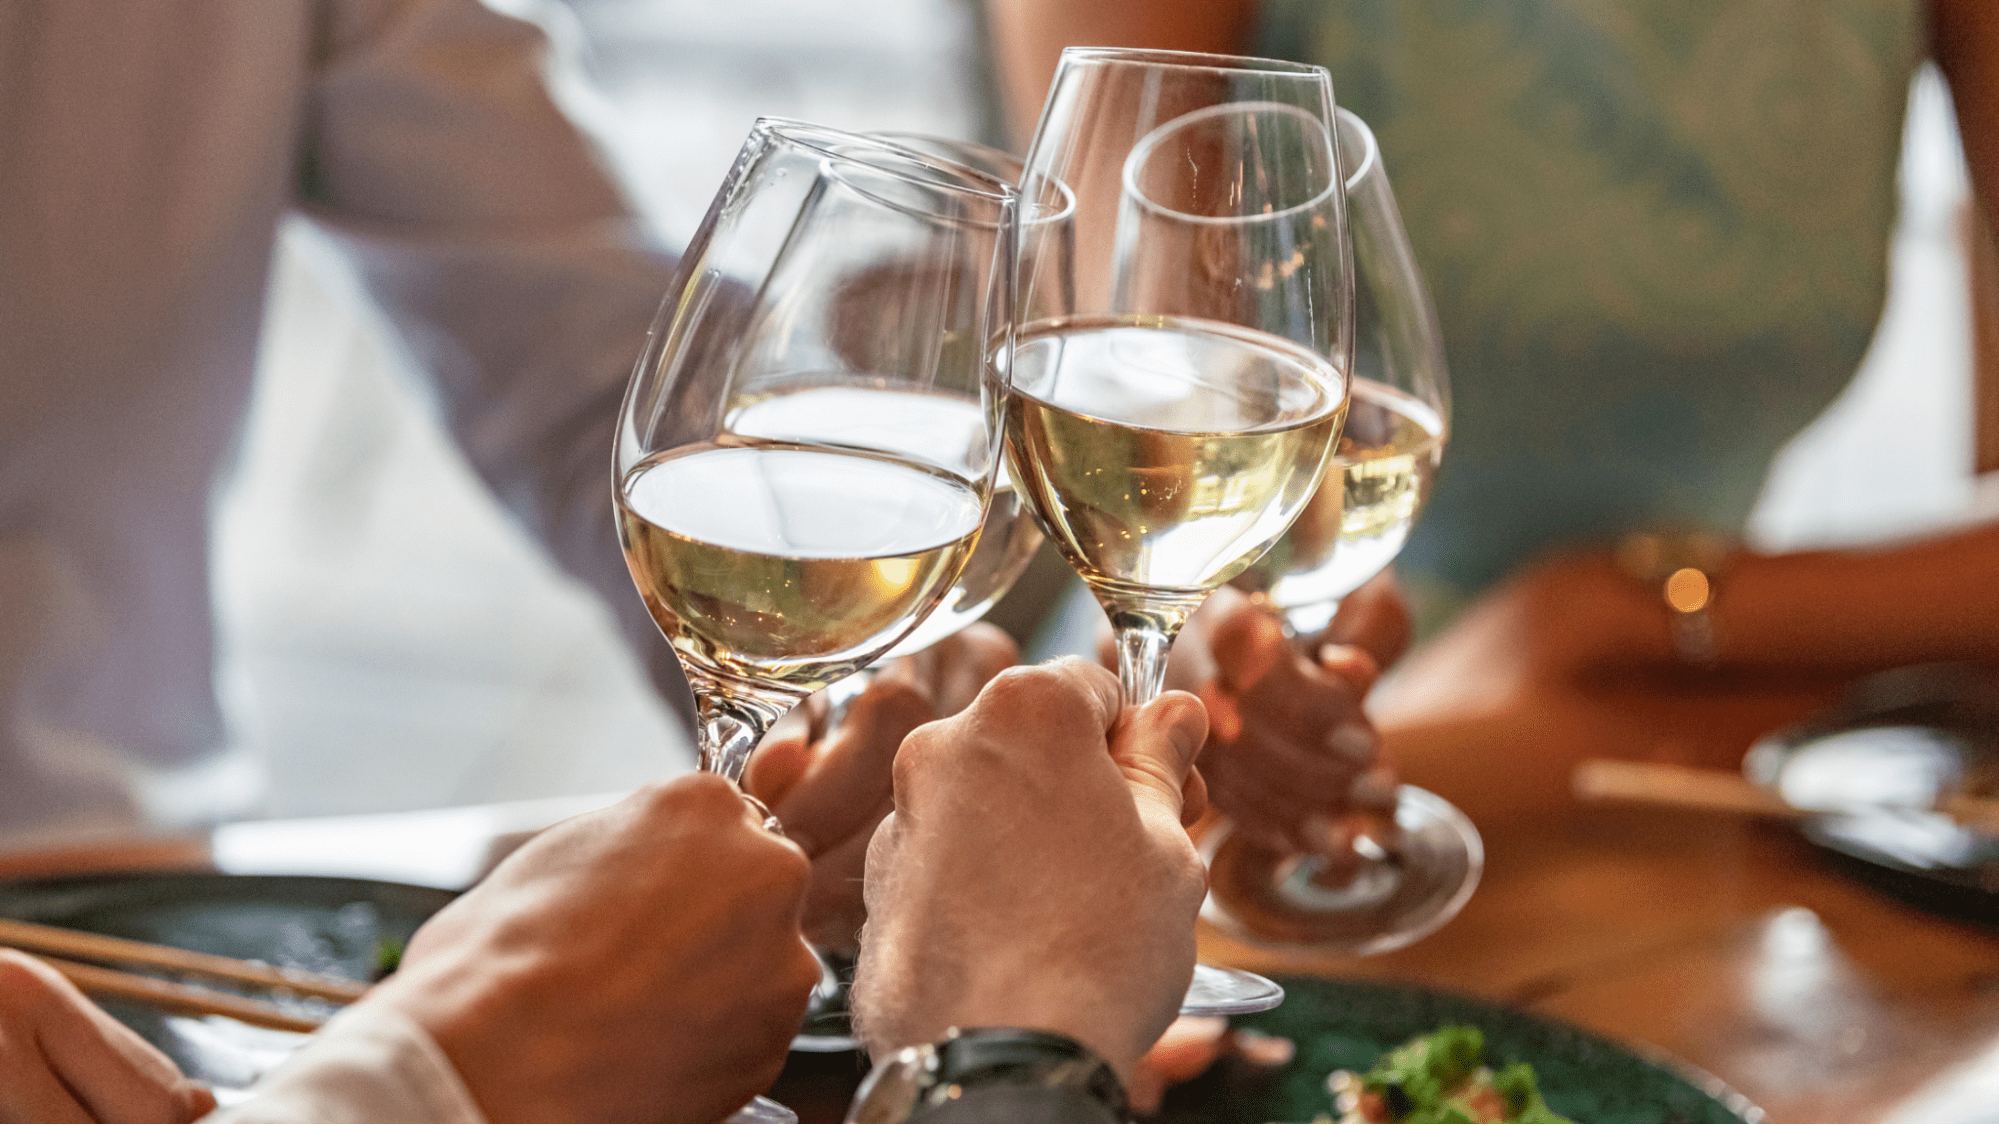 Friends cheersing white wine glasses